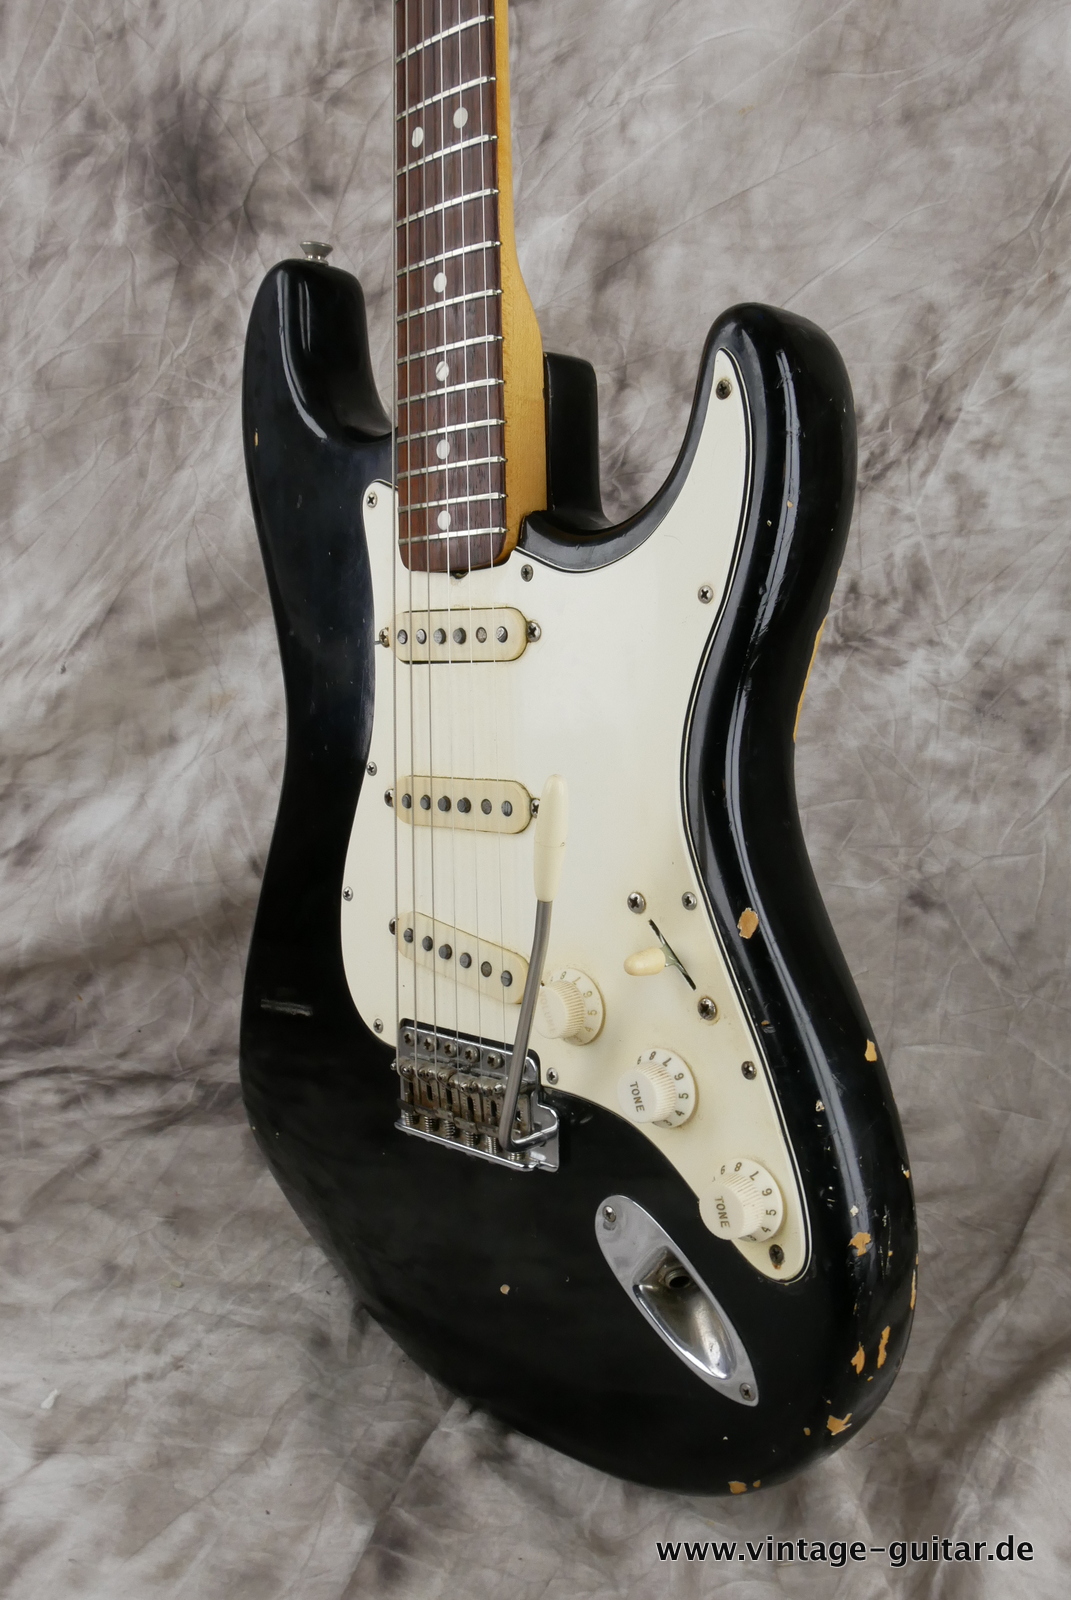 Fender-stratocaster-1969-black-013.JPG